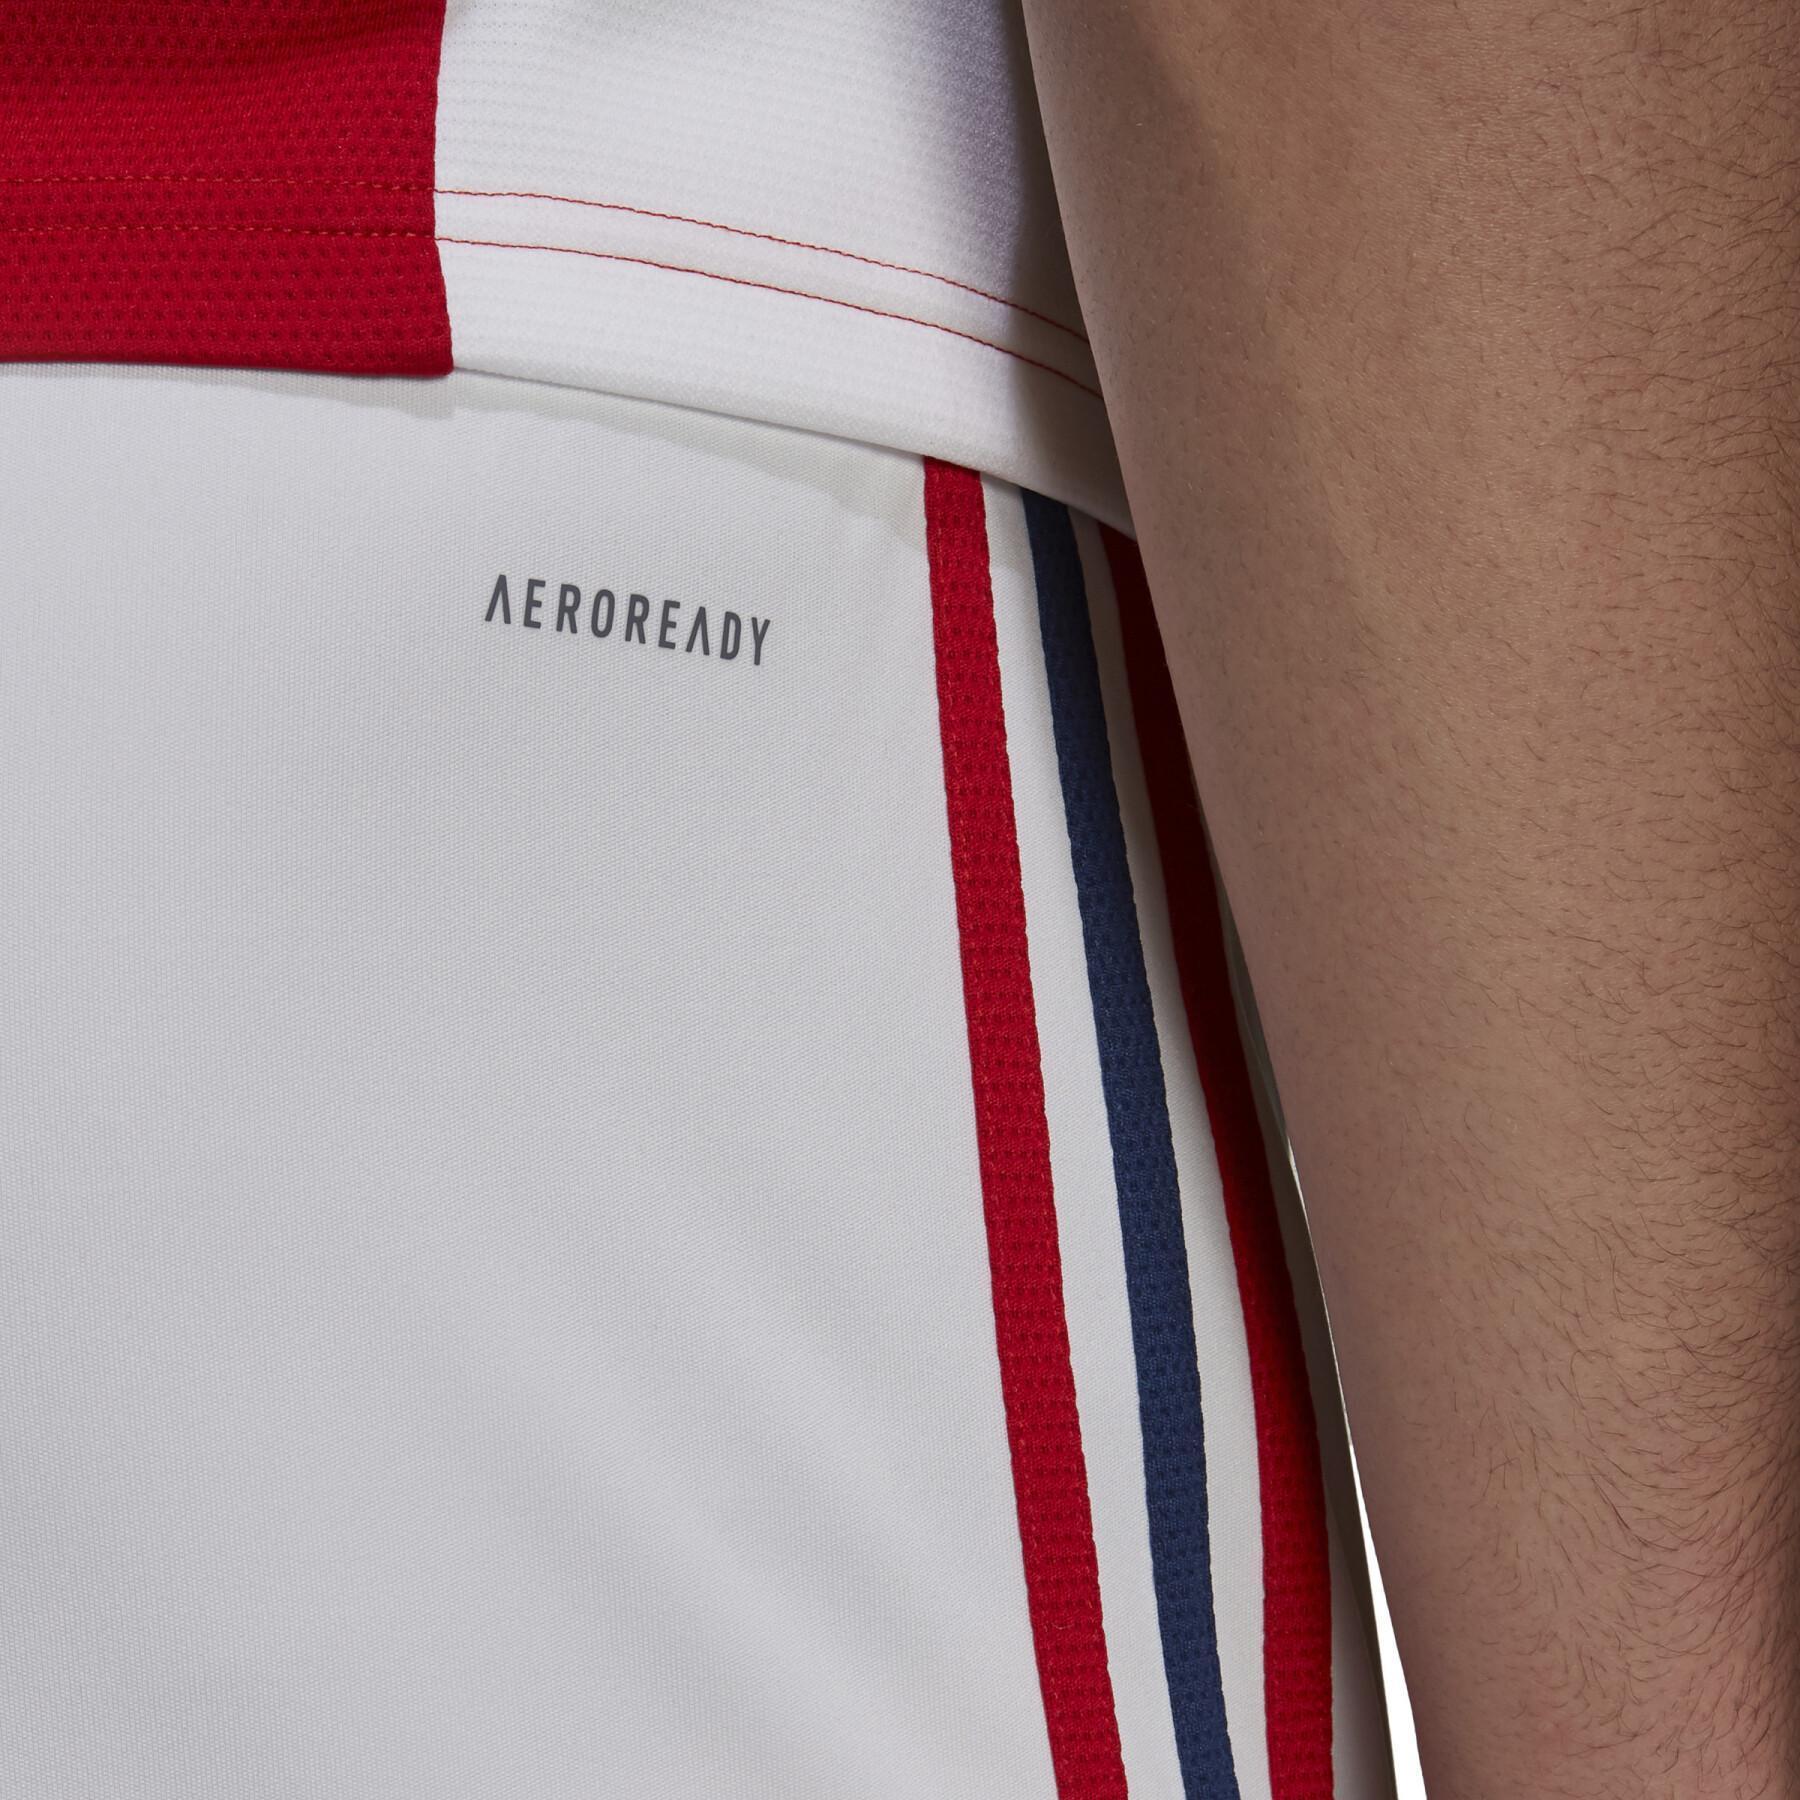 Pantalones cortos para el hogar Arsenal 2021/22